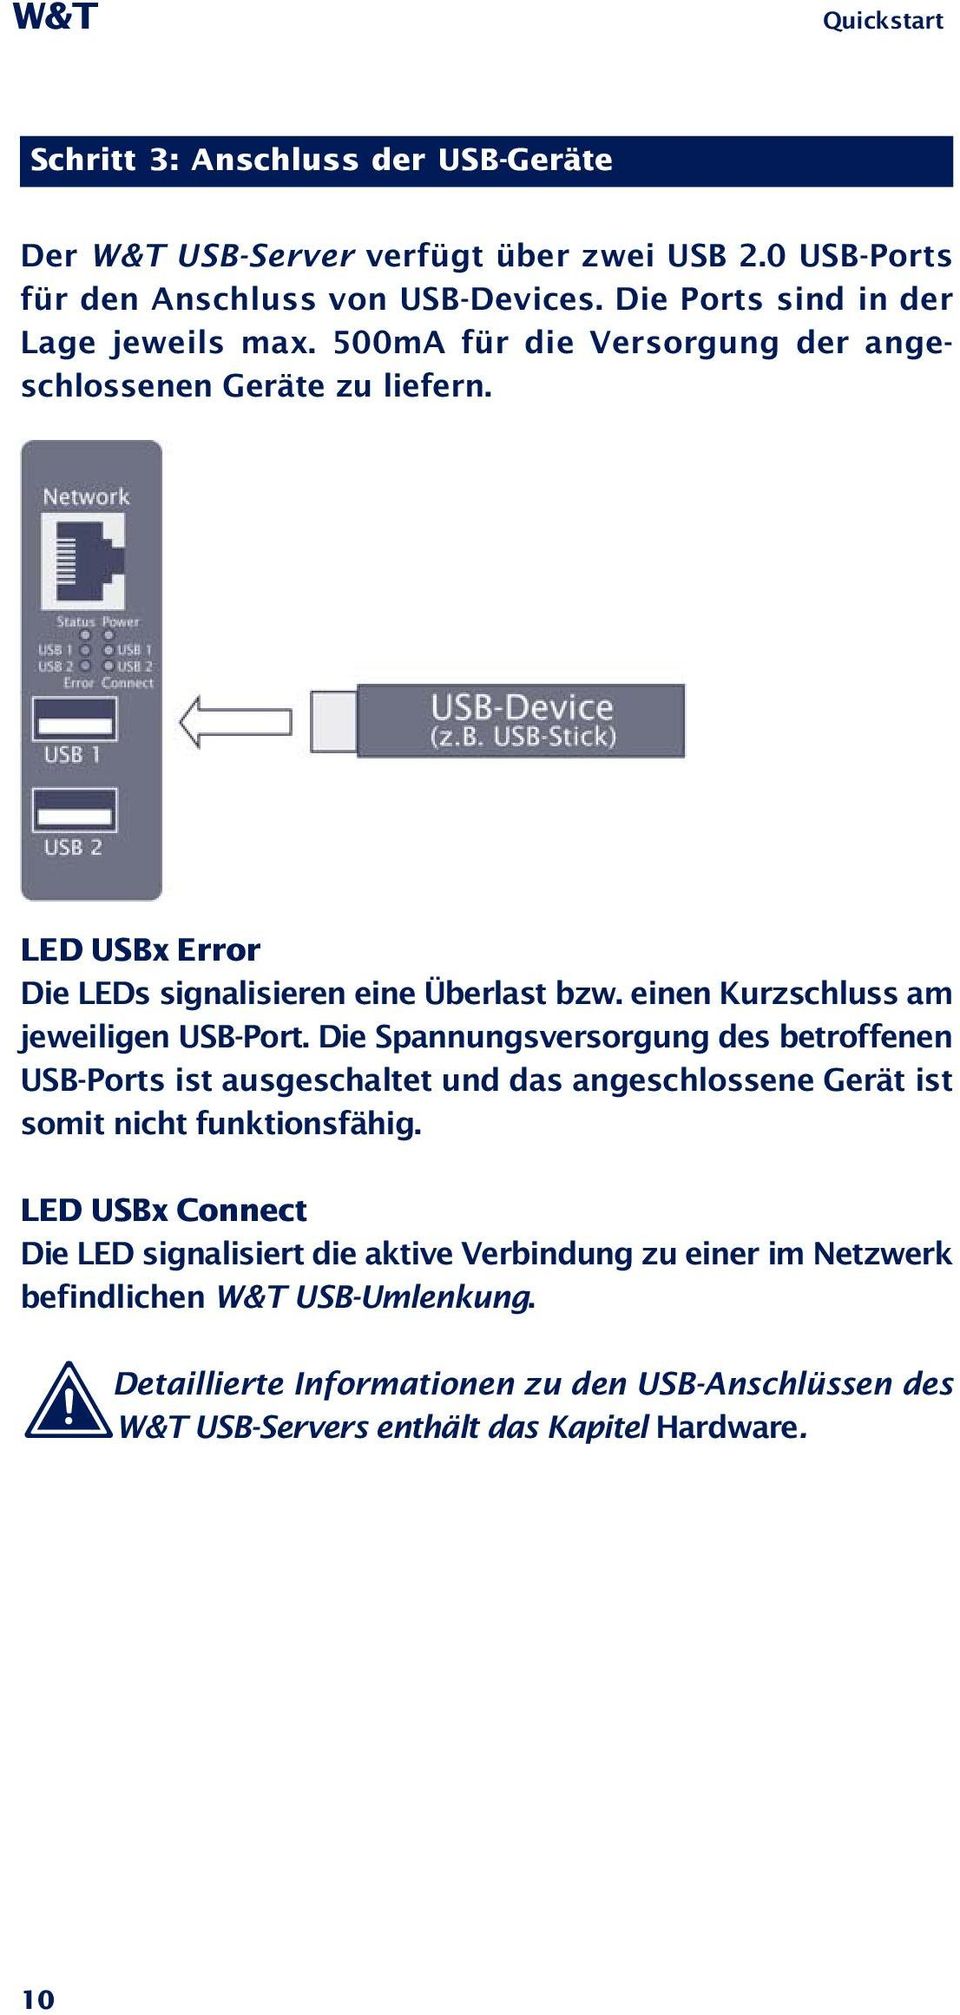 einen Kurzschluss am jeweiligen USB-Port. Die Spannungsversorgung des betroffenen USB-Ports ist ausgeschaltet und das angeschlossene Gerät ist somit nicht funktionsfähig.